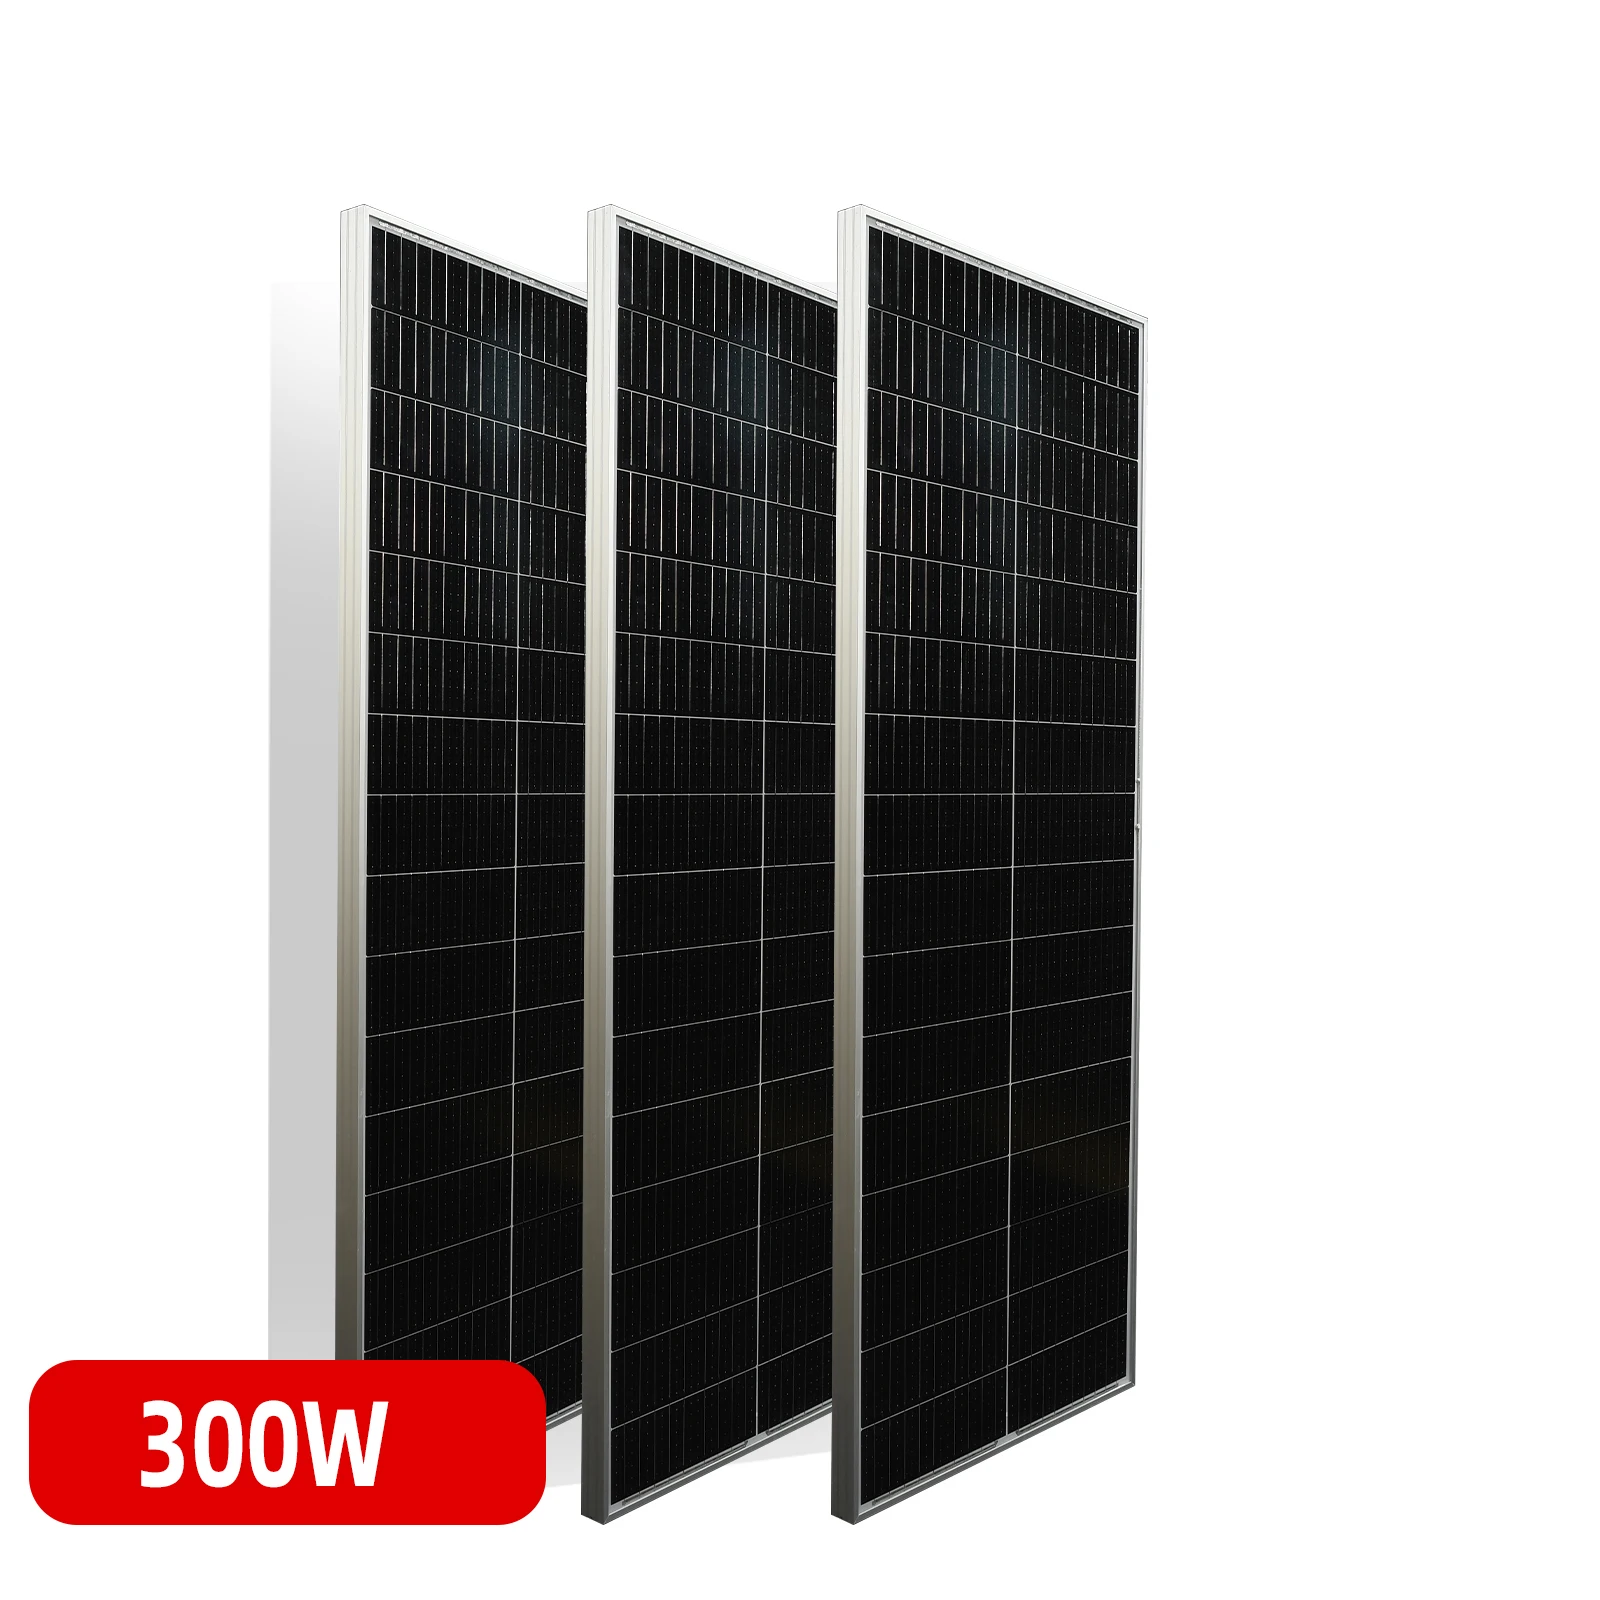 

Жесткая солнечная панель 300 Вт 200 Вт 100 Вт закаленная стеклянная панель солнечная батарея 12 в 24 В система зарядного устройства комплекты для пешего туризма дома лодки кемпинга